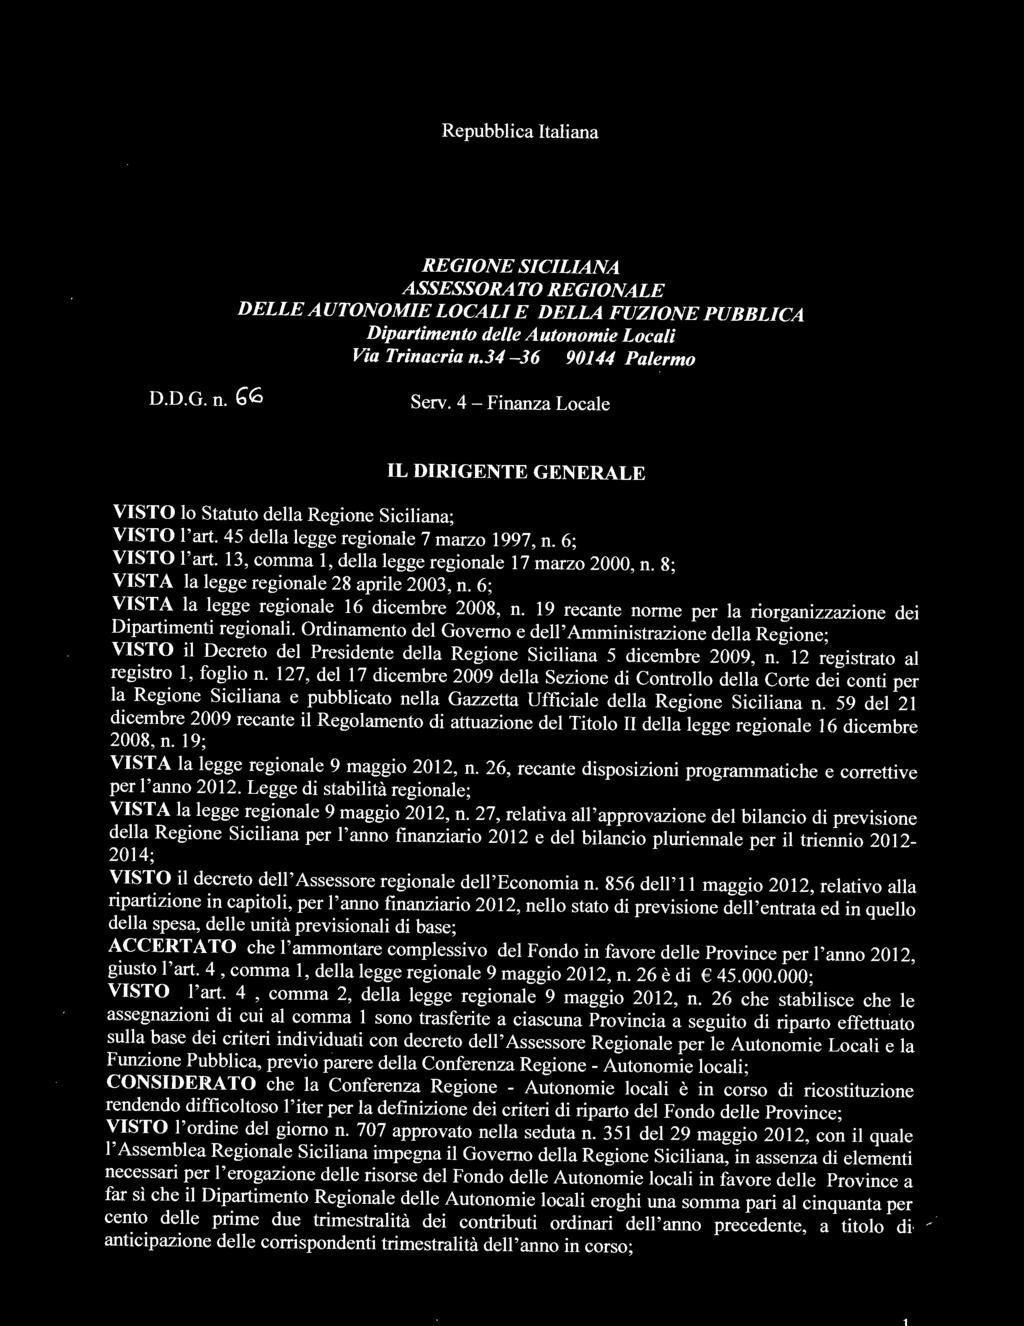 Ordinamento del Governo e dell'amministrazione della Regione; VISTO il Decreto del Presidente della Regione Siciliana 5 dicembre 2009, n. 12 registrato al registro l, foglio n.